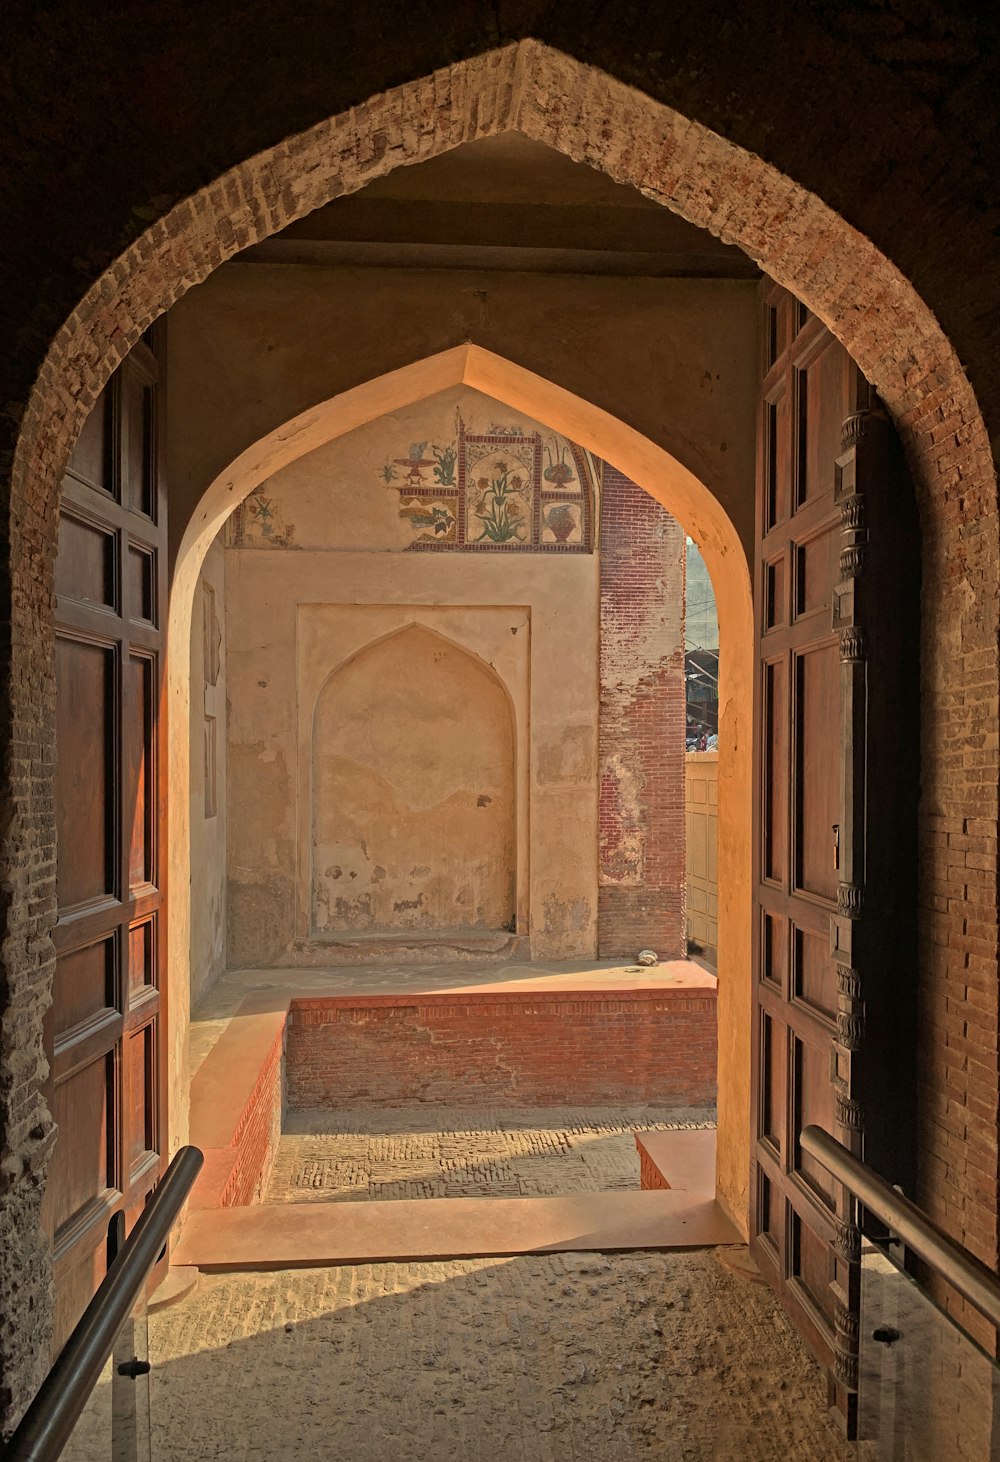 a doorway in a building